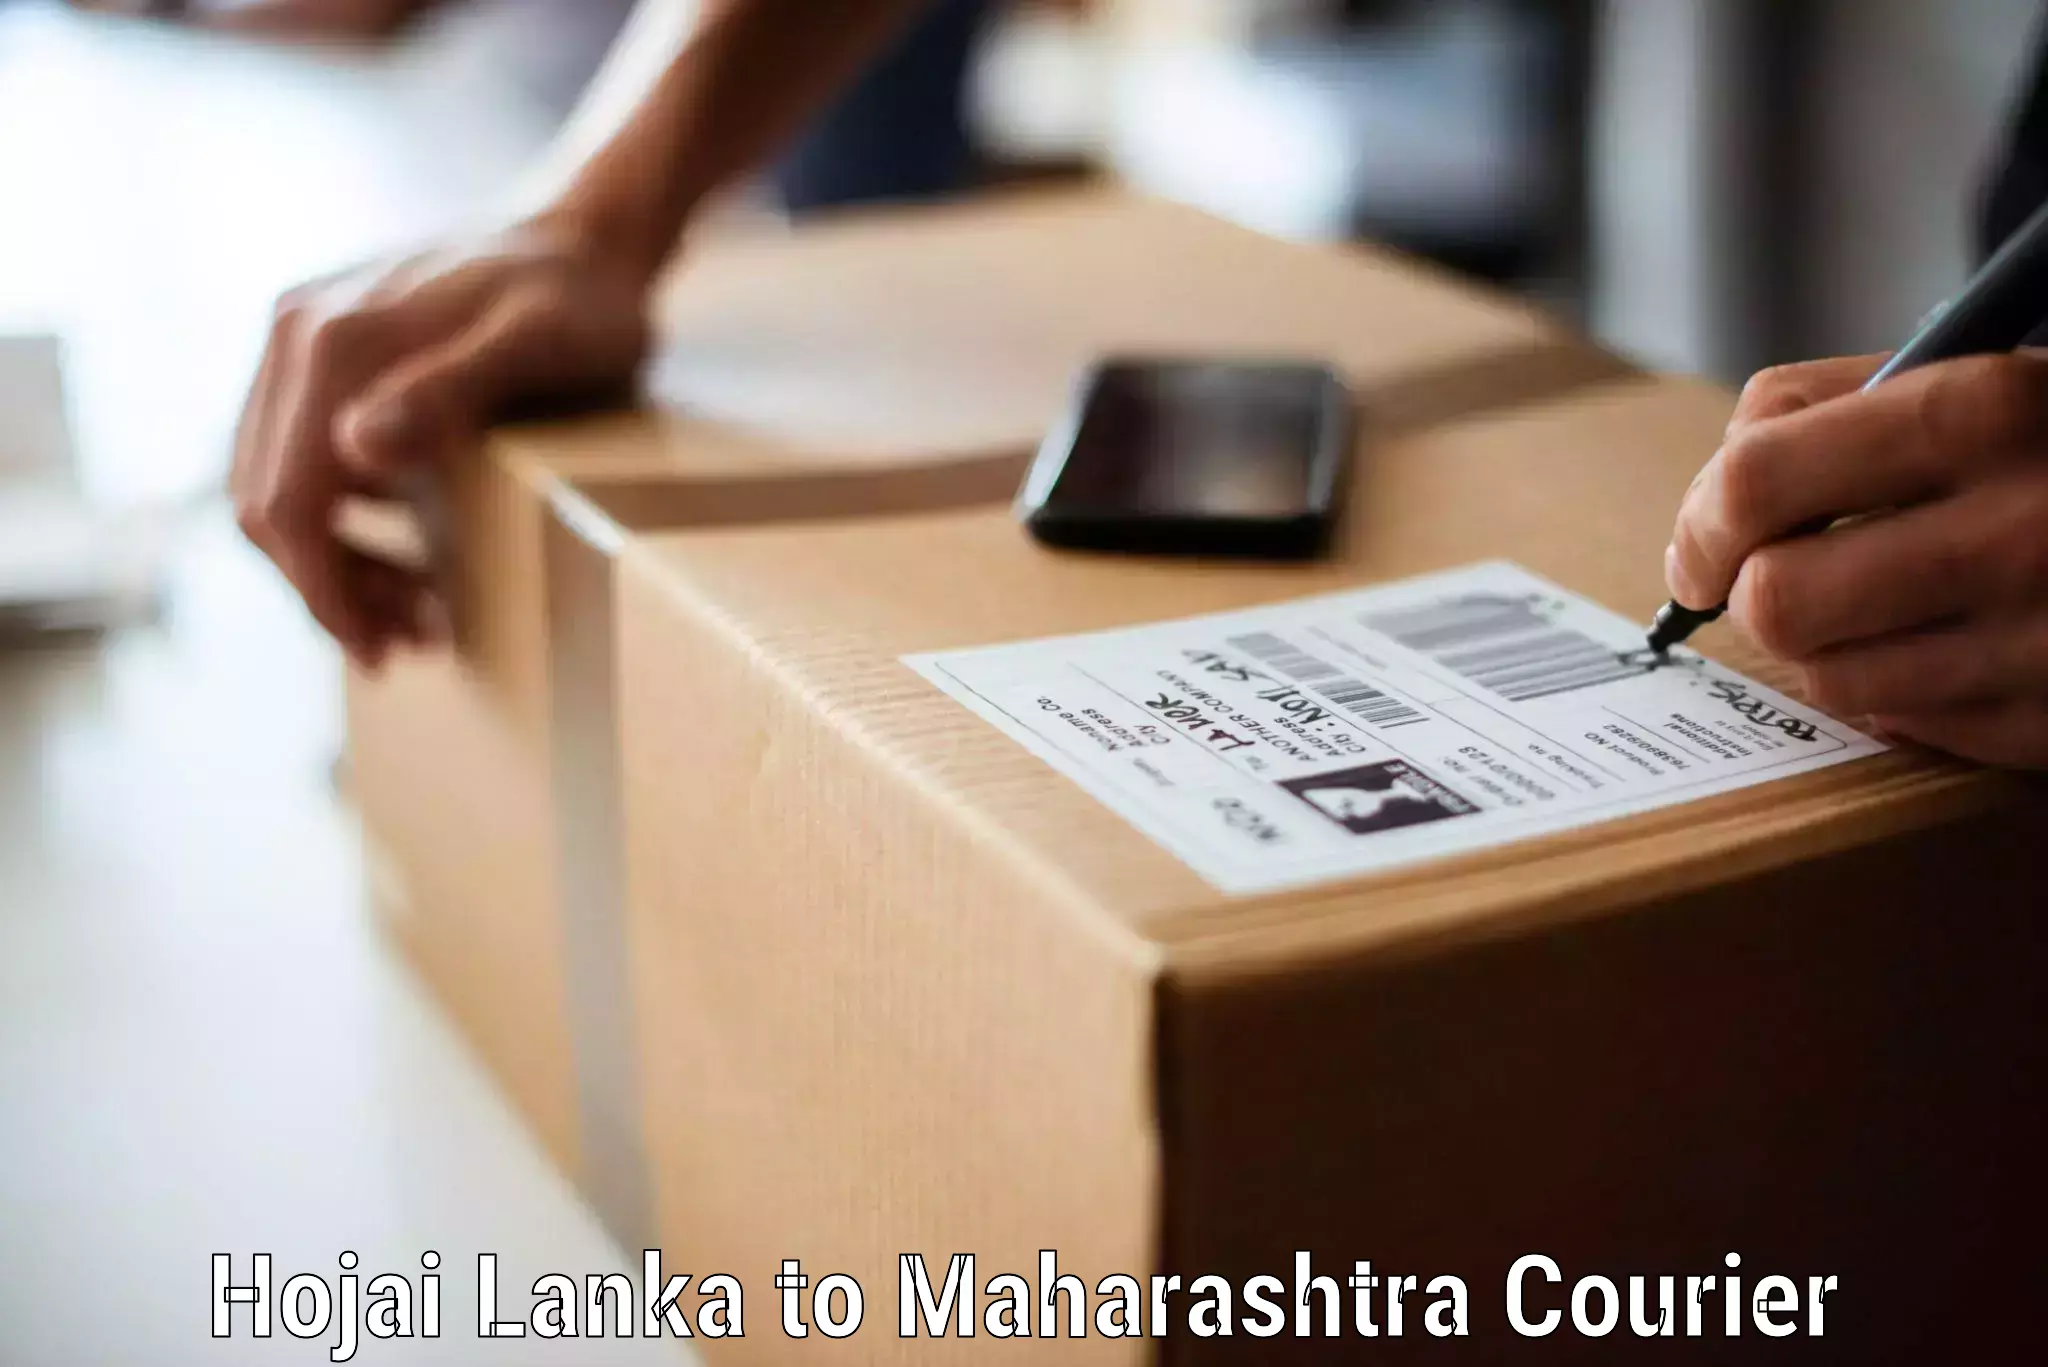 Hassle-free relocation Hojai Lanka to Maharashtra